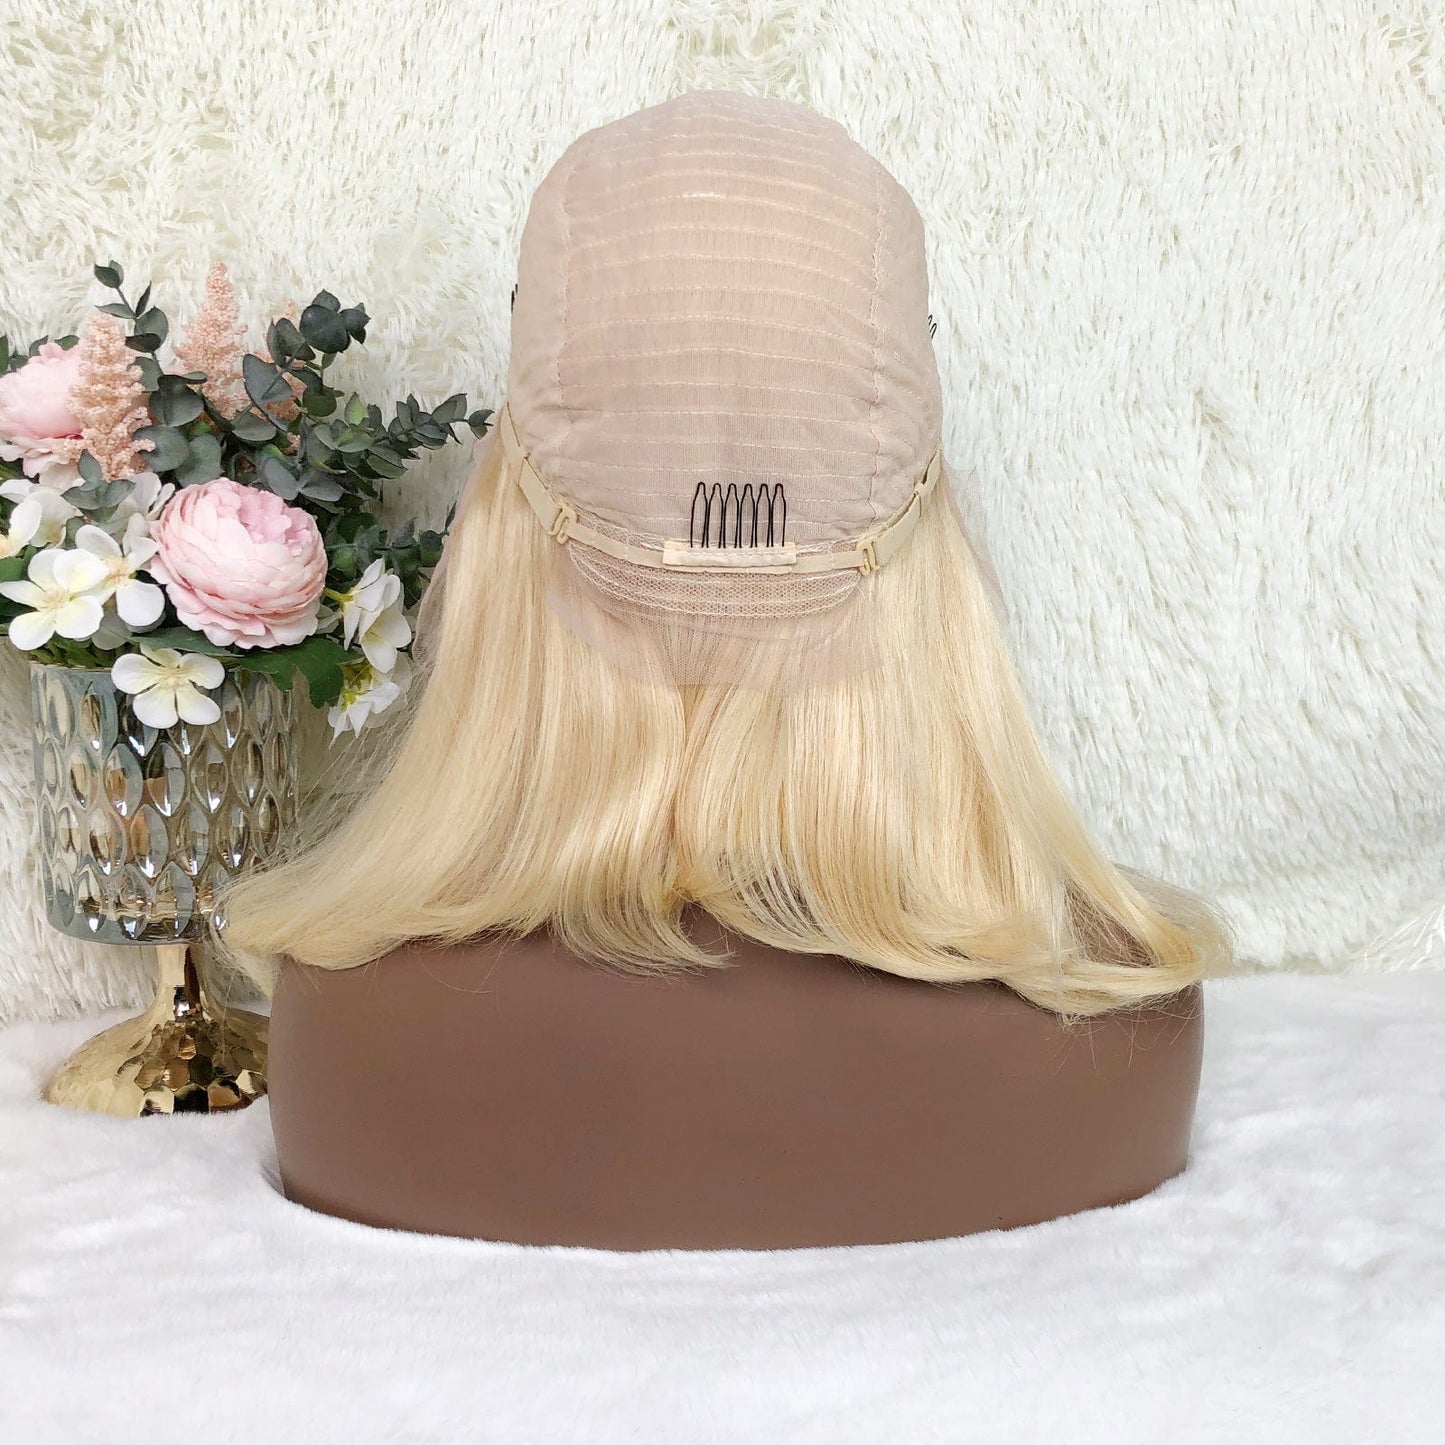 Queen Hair Inc 10a+ 150% Virgin Bob Wig #613